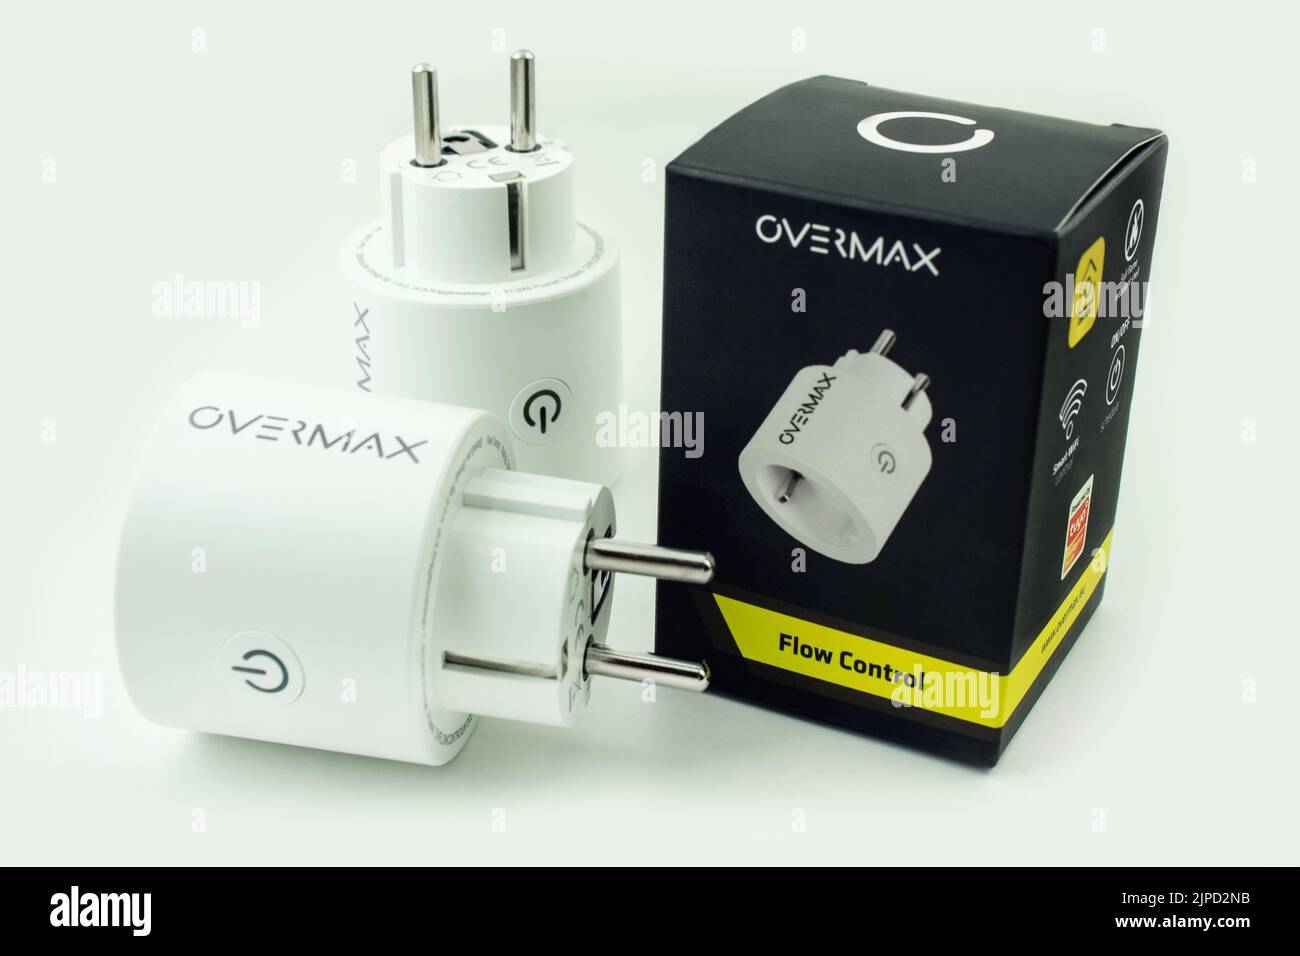 Stromverbrauchsmesser Overmax Flow Control und Verpackung Foto Stock